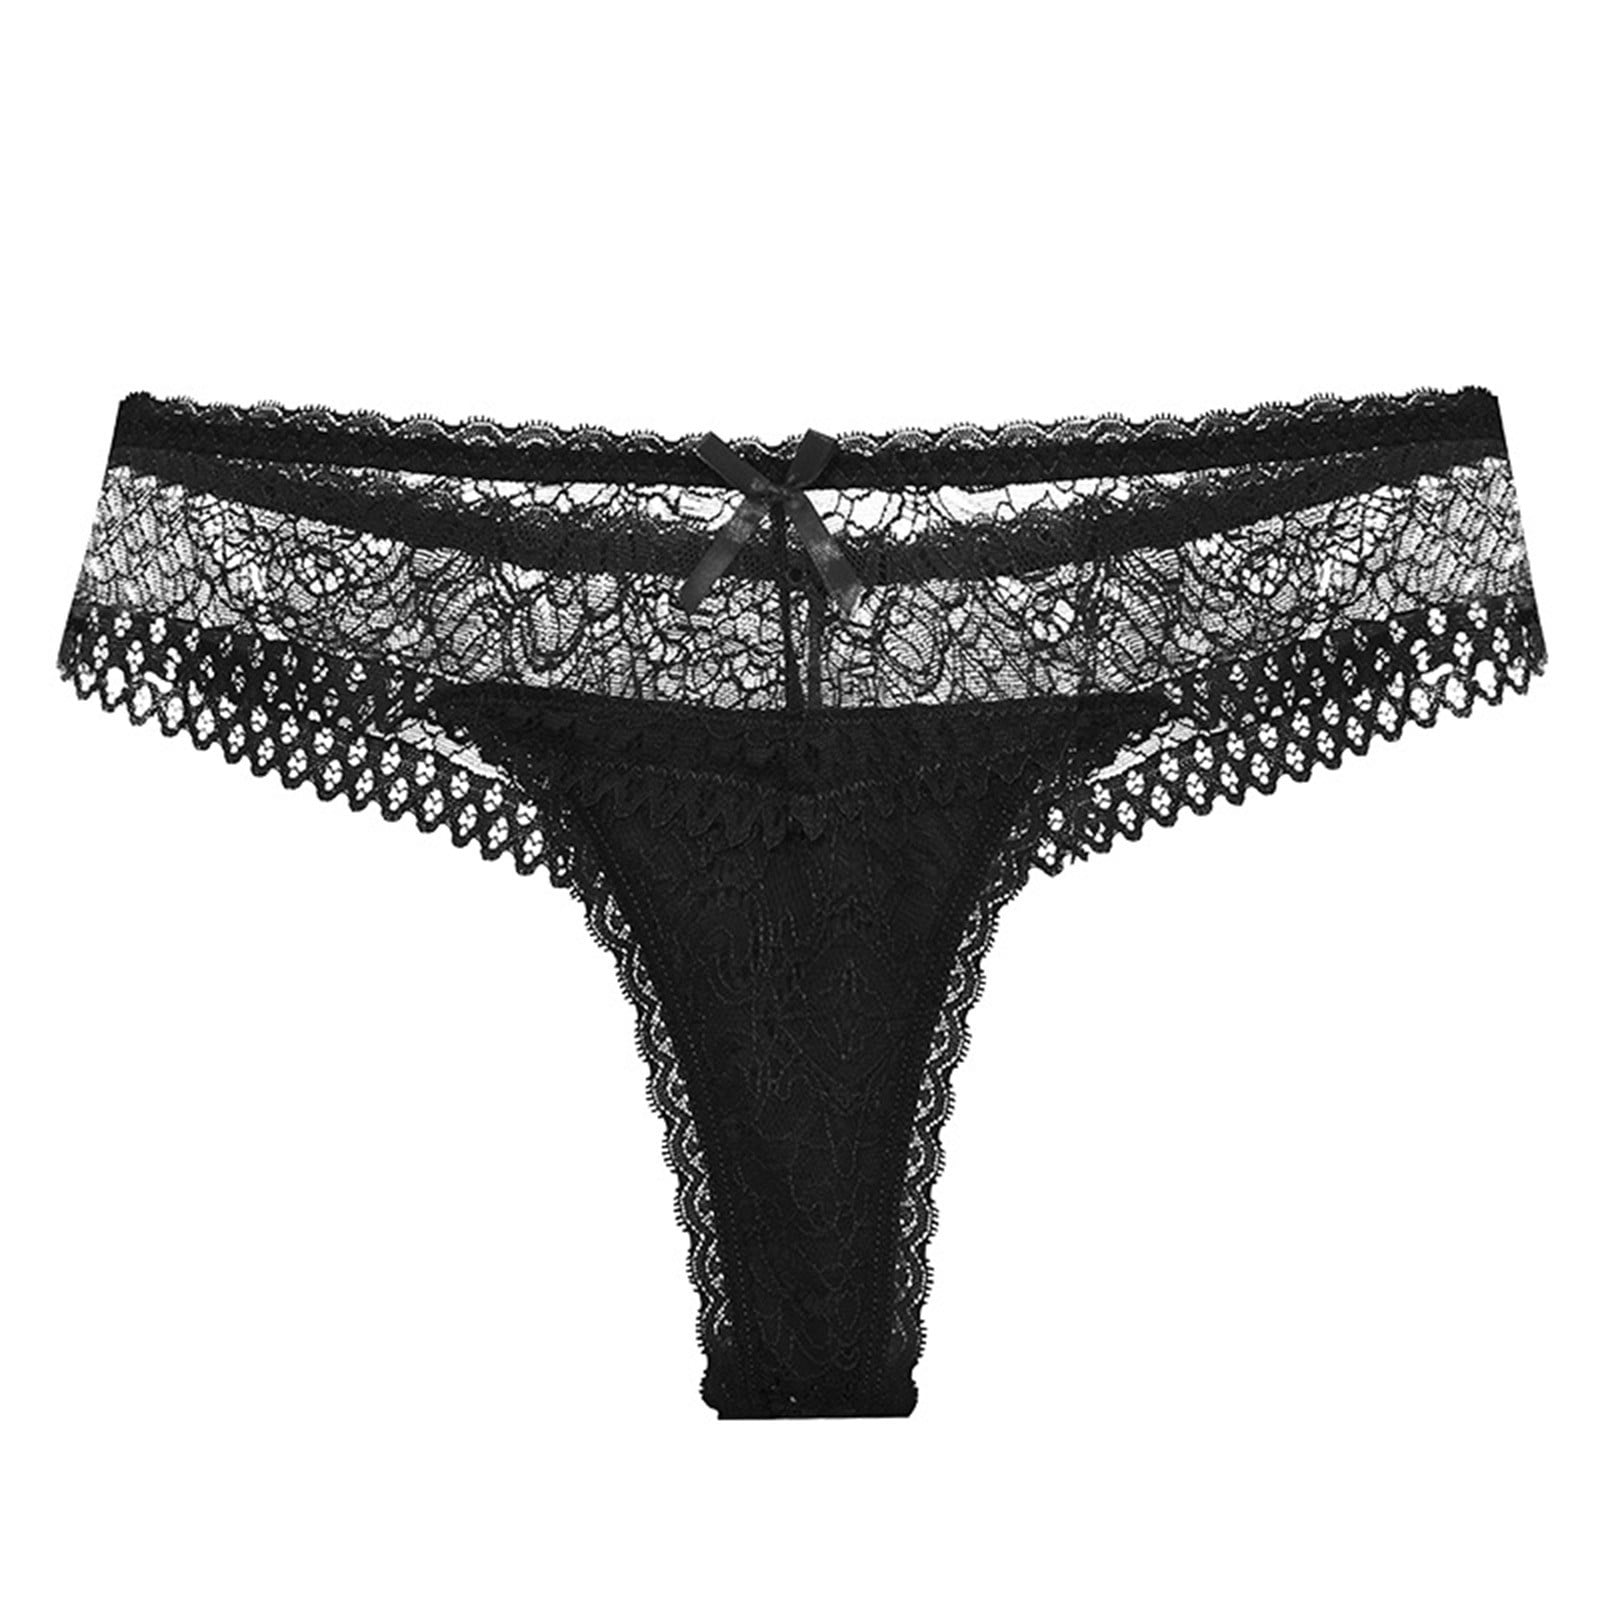 HUPOM Satin Panties Girls Underwear Briefs Leisure Tie Comfort Waist Black  M 